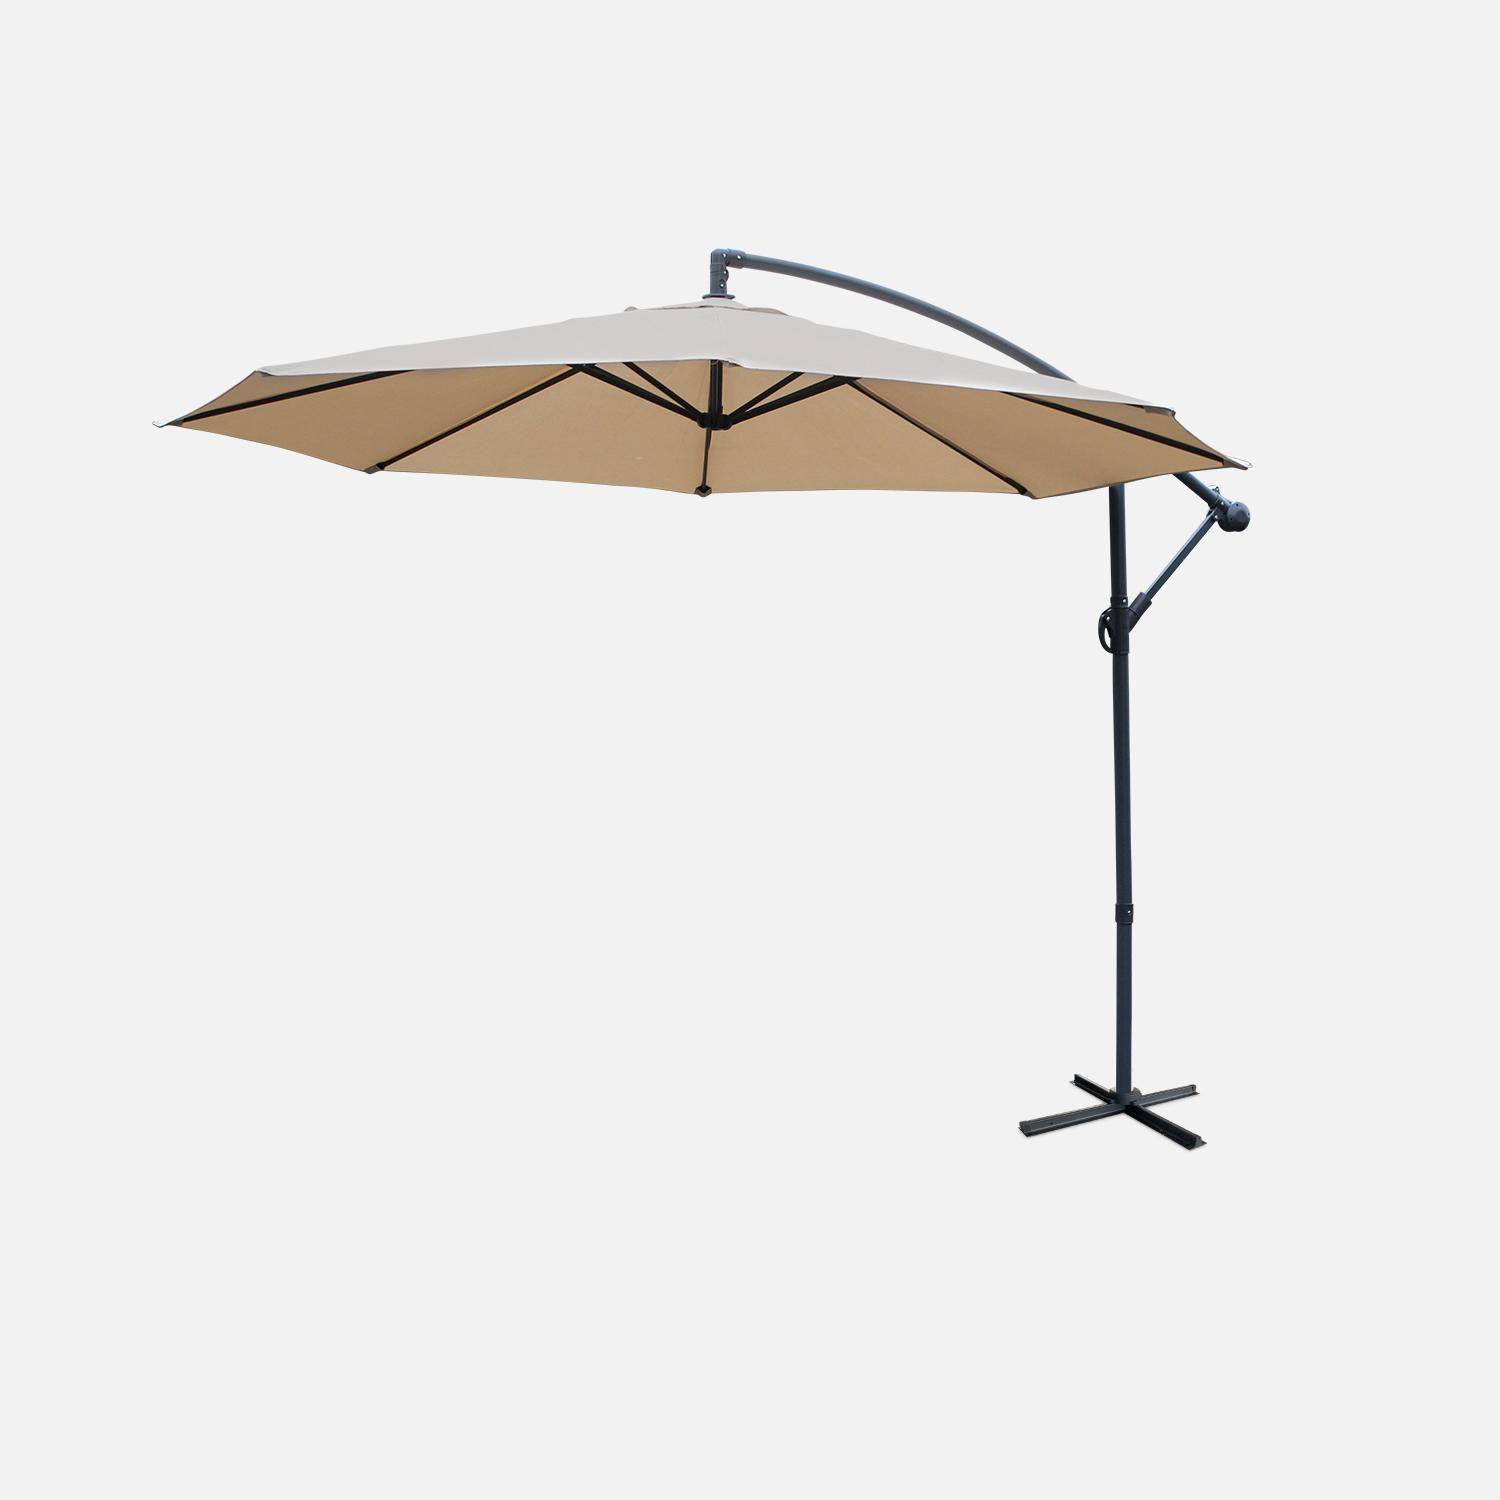 3x3m guarda-chuva redondo deportado - Hardelot - Bege - Manivela anti-retorno | Tecido repelente à água | Fácil de usar Photo2